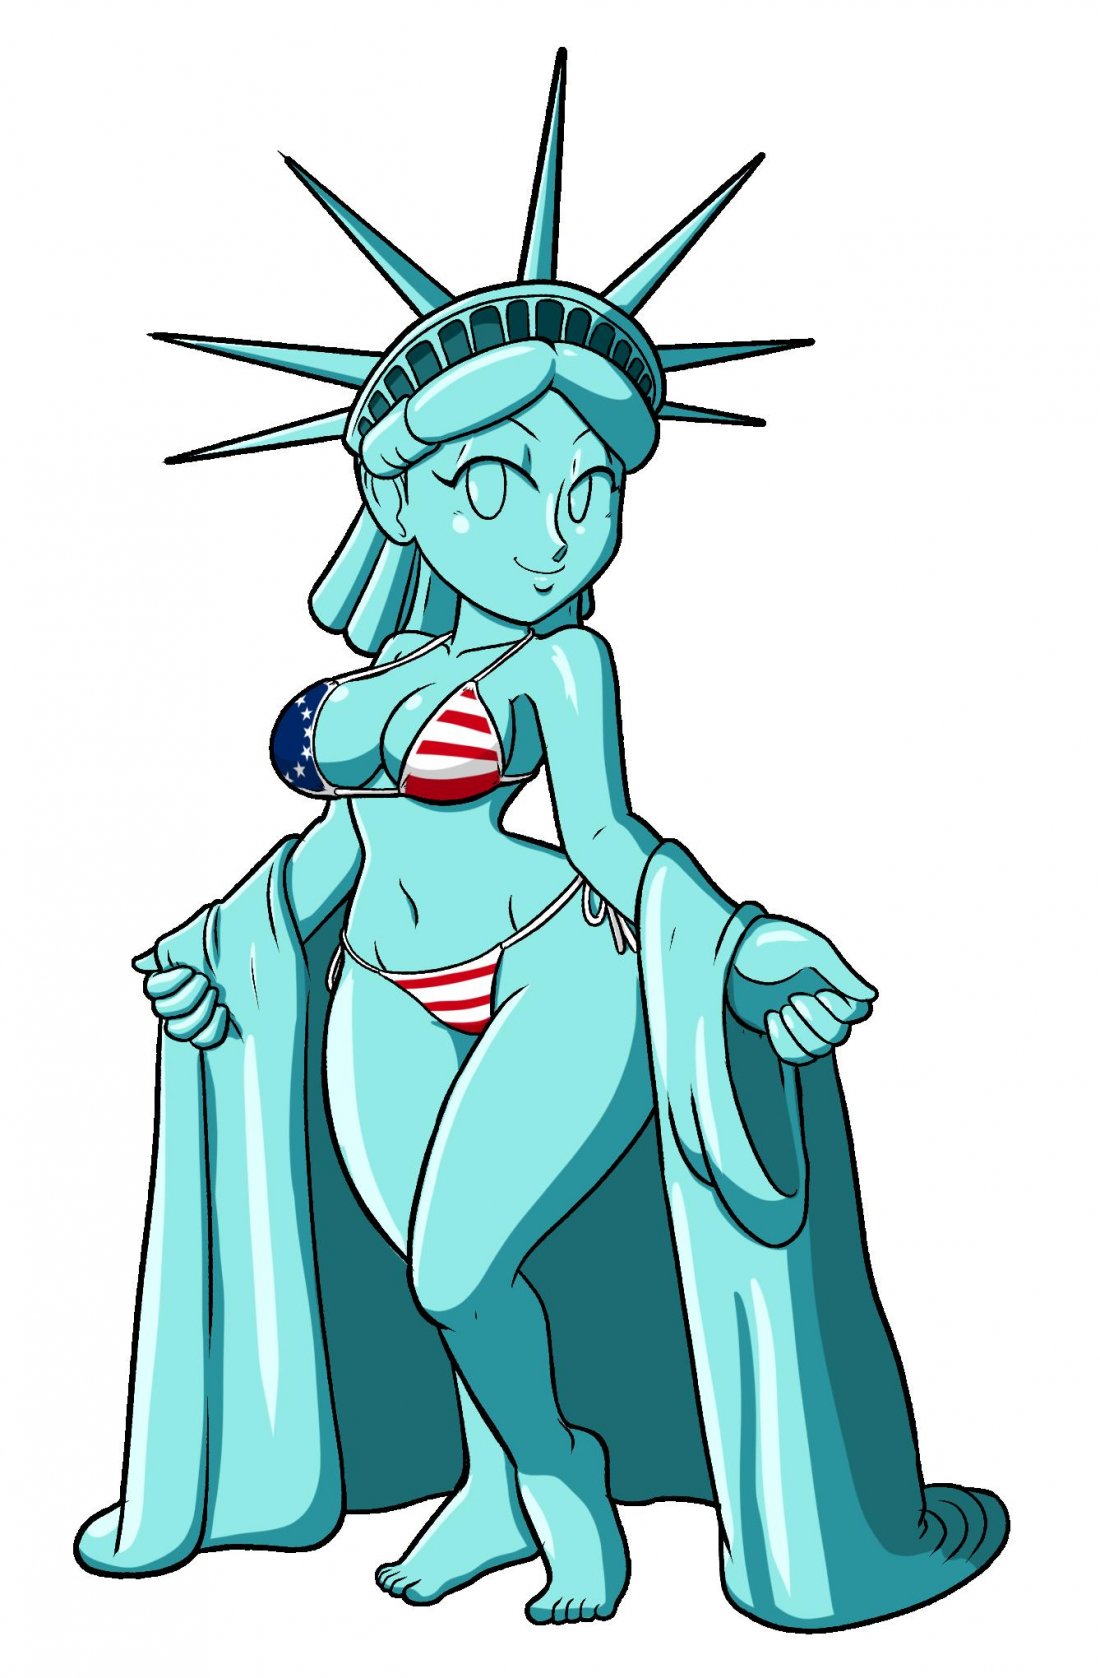 Lady liberty naked - 🧡 The Big ImageBoard (TBIB) - inanimate lady liberty statue...